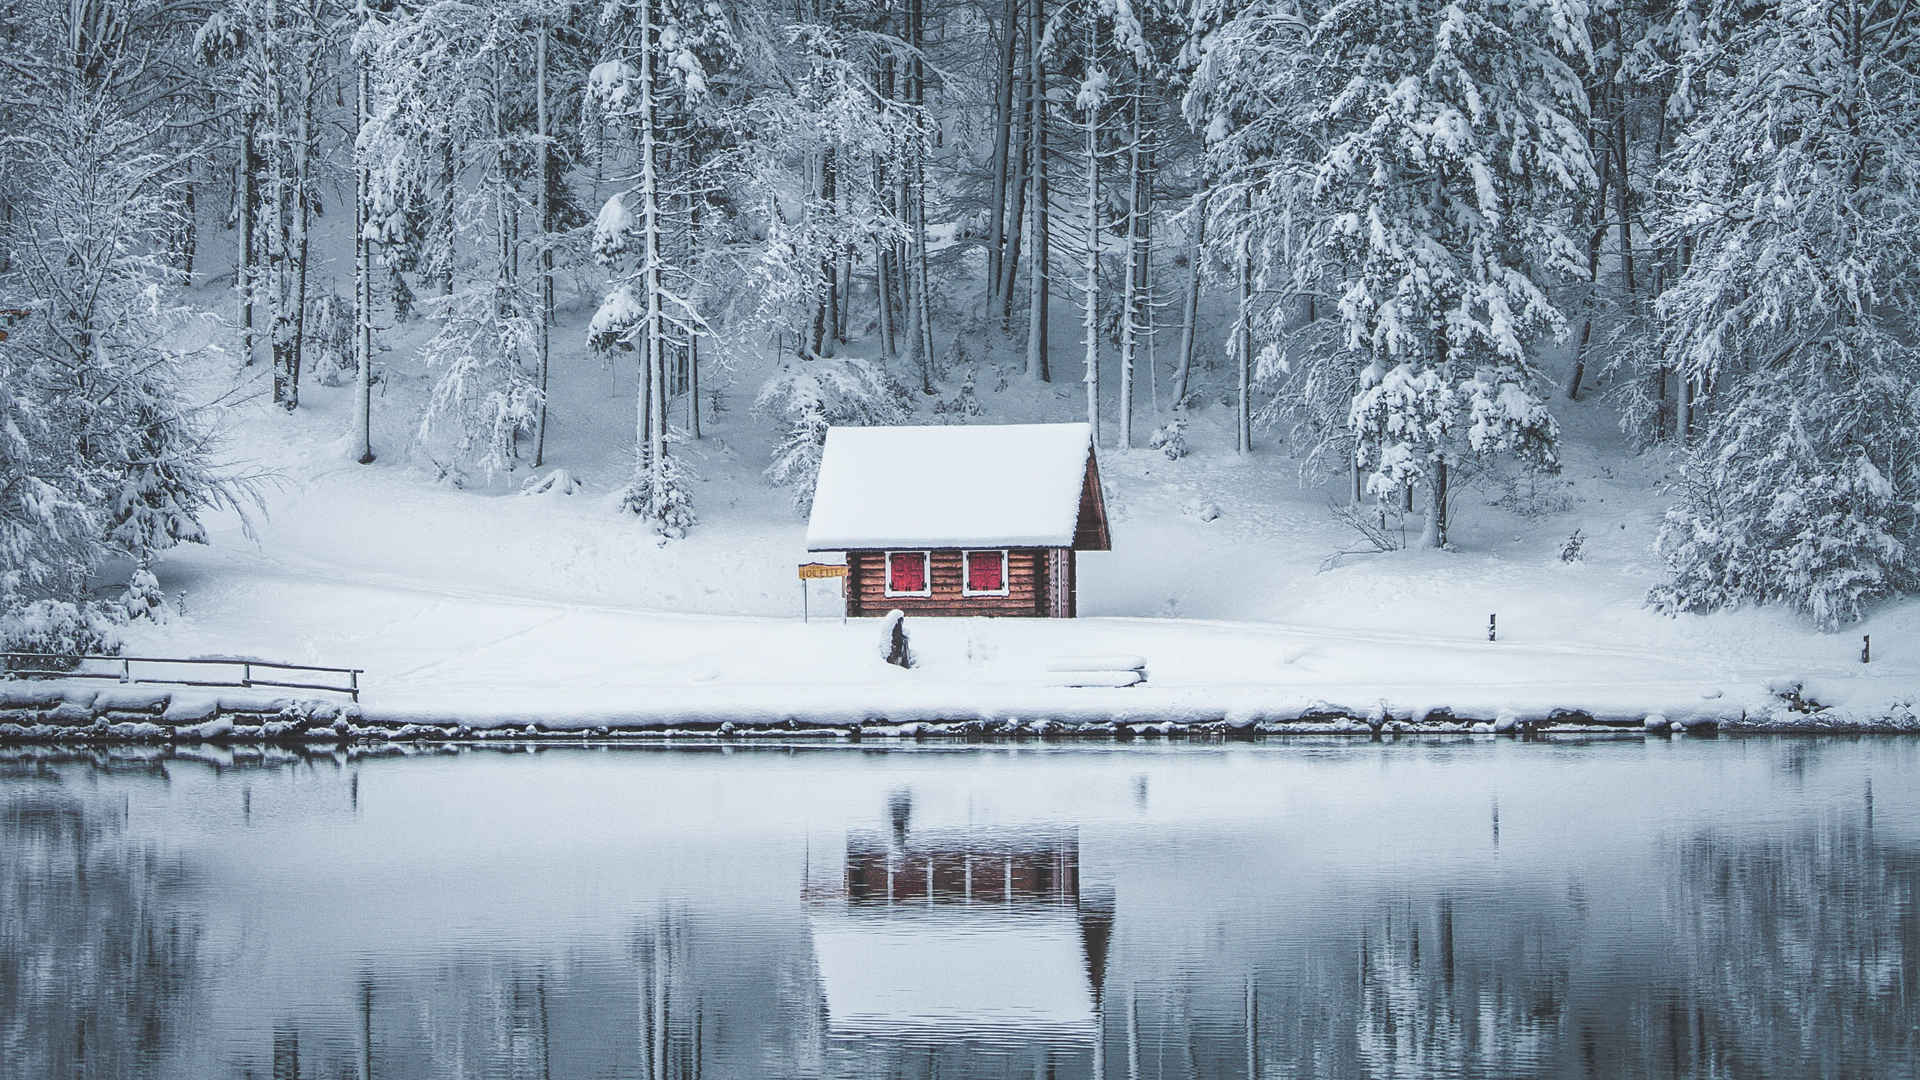 林中小屋冬天漂亮的图片壁纸-